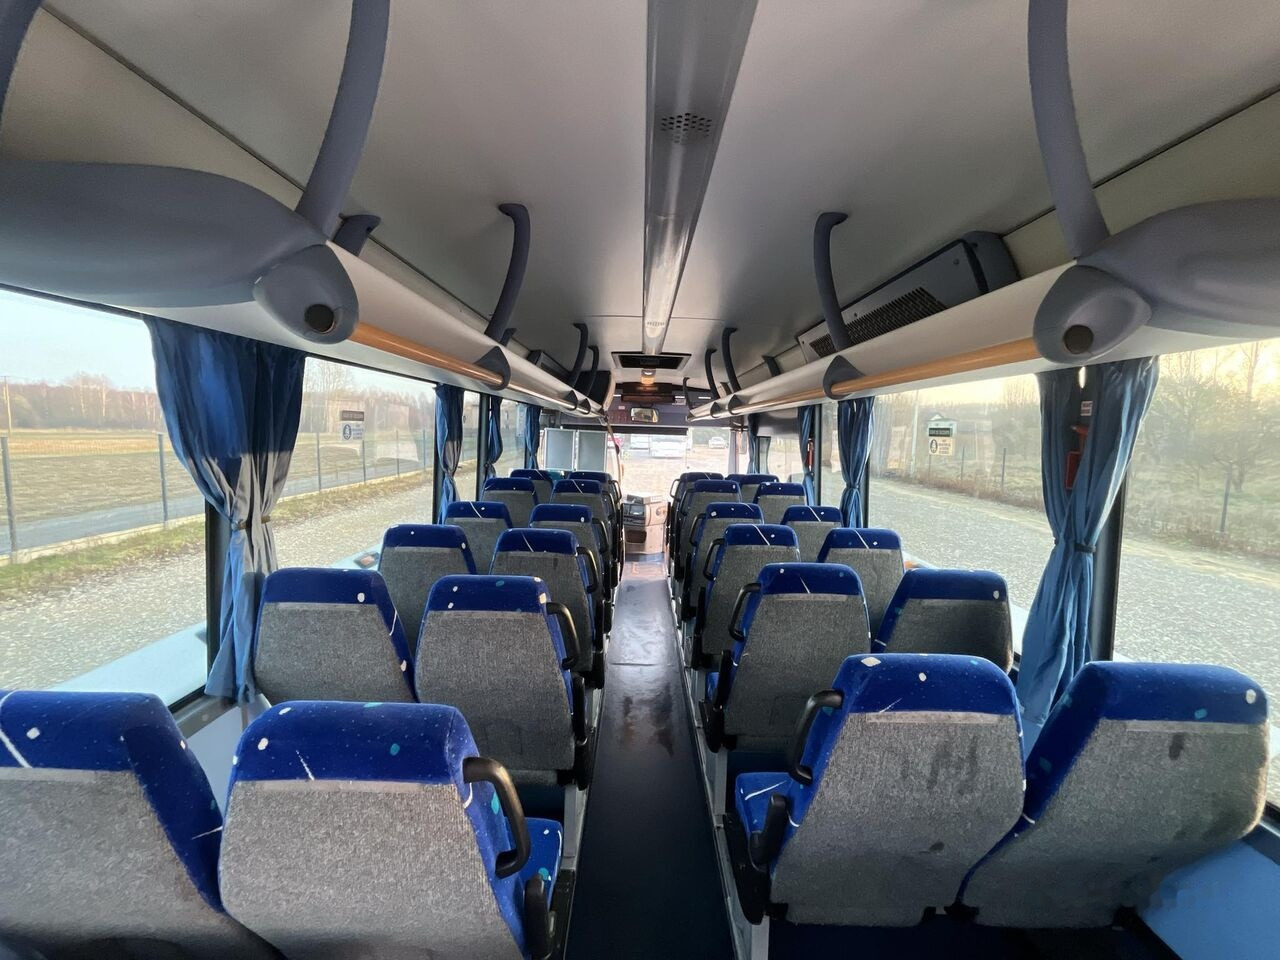 Turistinis autobusas Irisbus Crossway/Klimatyzacja/Manual/60+29 miejsc/Euro 5: foto 24